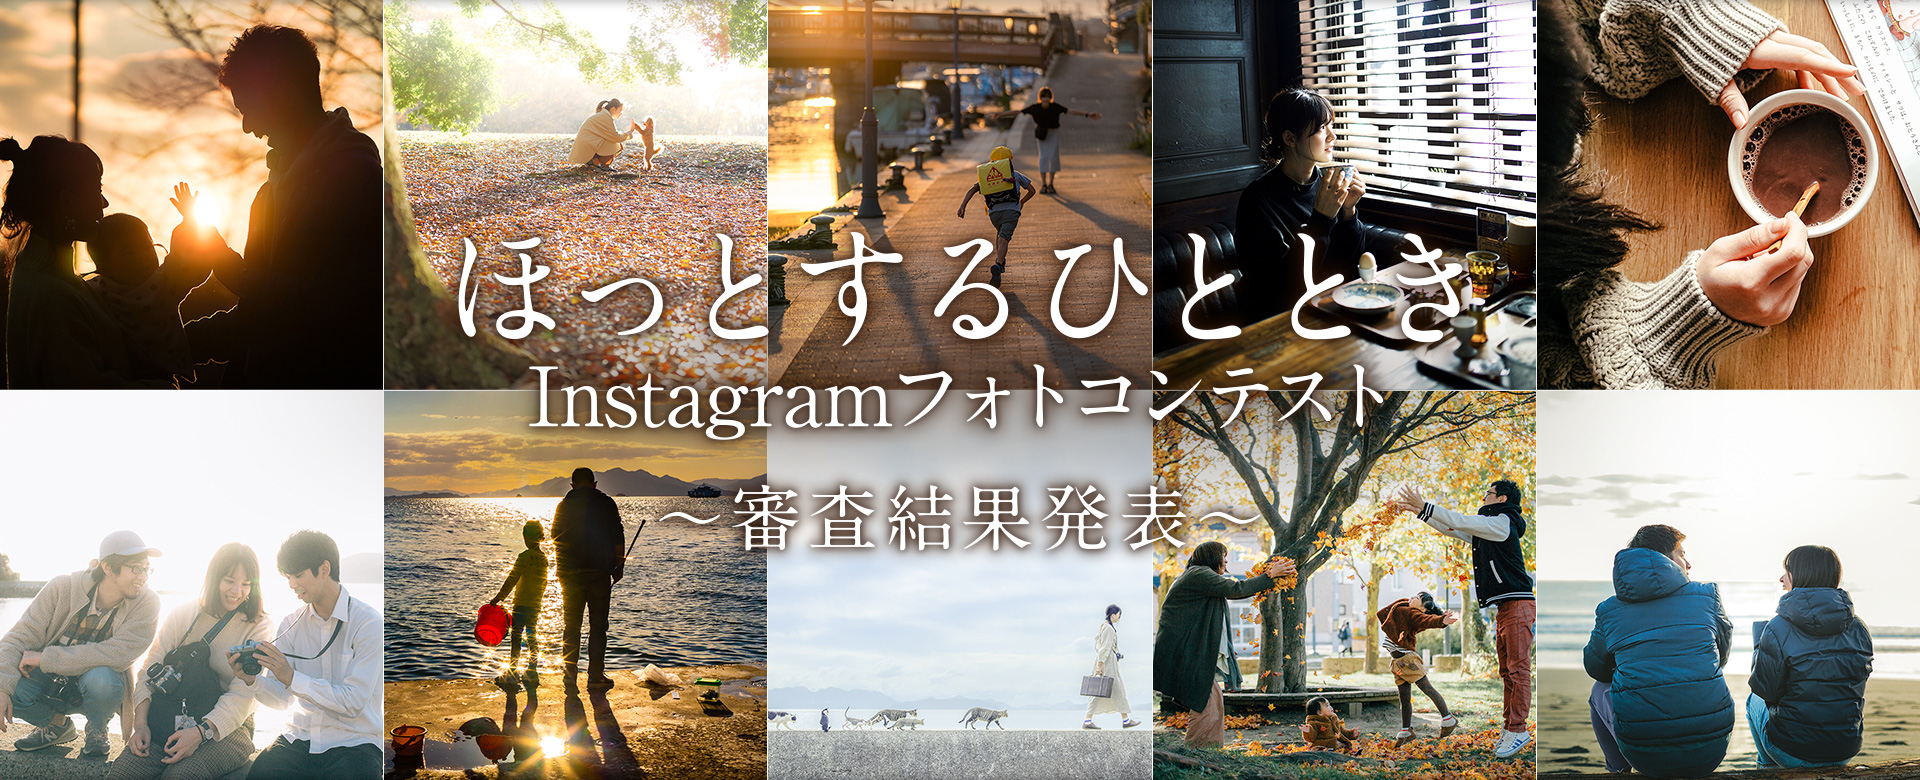 「ほっとするひととき」Instagramフォトコンテスト〜審査結果発表〜